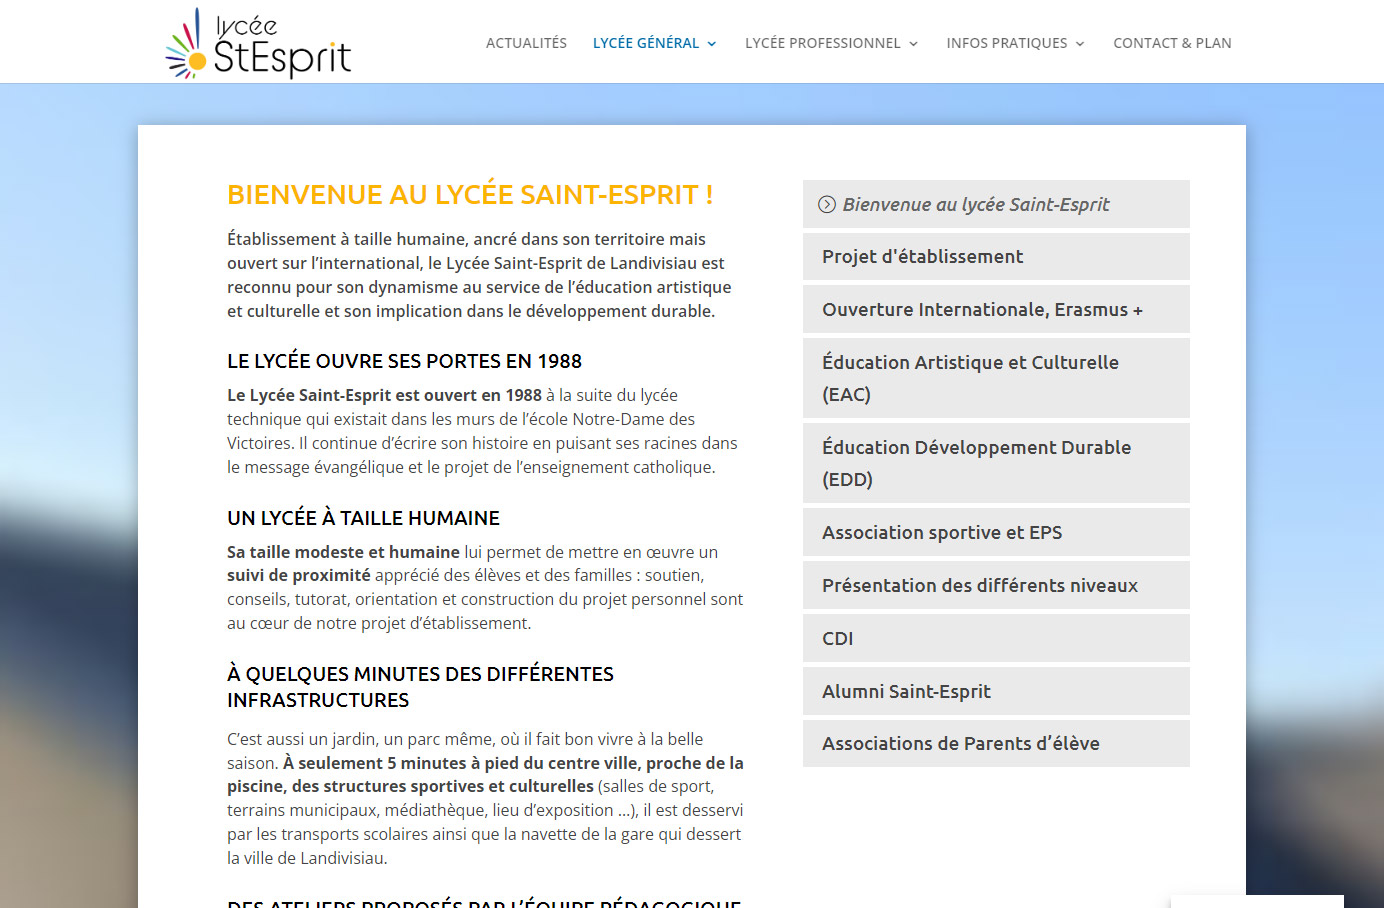 Réalisation du site web Lycée Saint-Esprit à Landivisiau par CreaWebsense Douarnenez